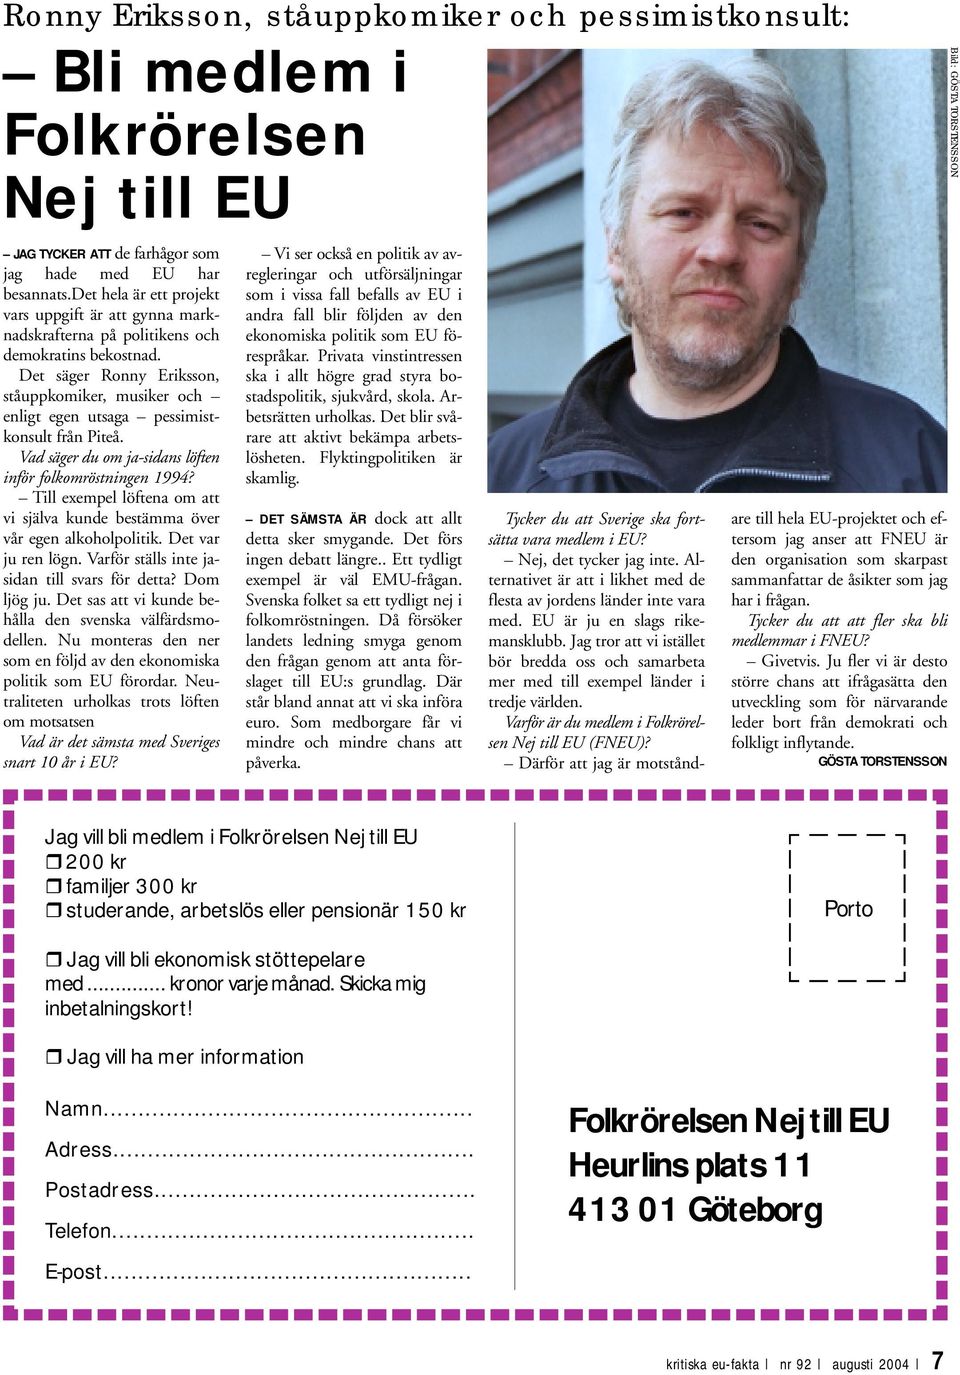 Det säger Ronny Eriksson, ståuppkomiker, musiker och enligt egen utsaga pessimistkonsult från Piteå. Vad säger du om ja-sidans löften inför folkomröstningen 1994?